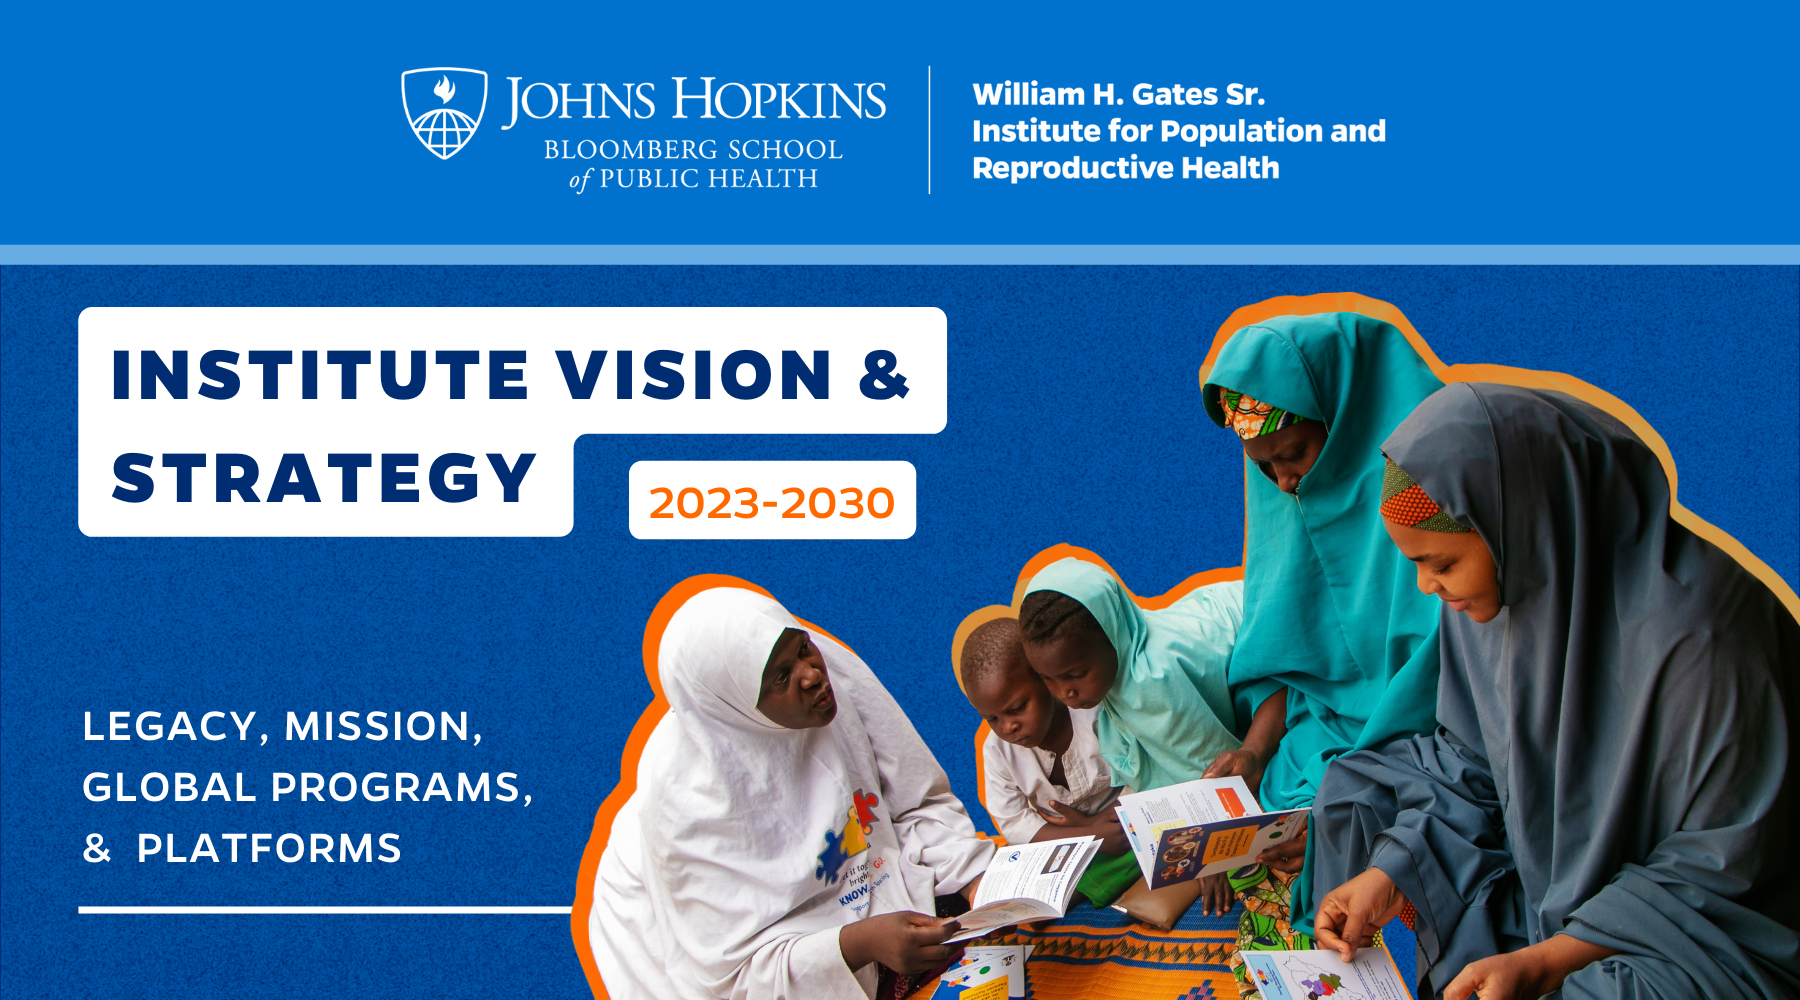 L'Institut William H. Gates Sr. pour la population et la santé génésique dévoile une nouvelle stratégie jusqu'en 2030